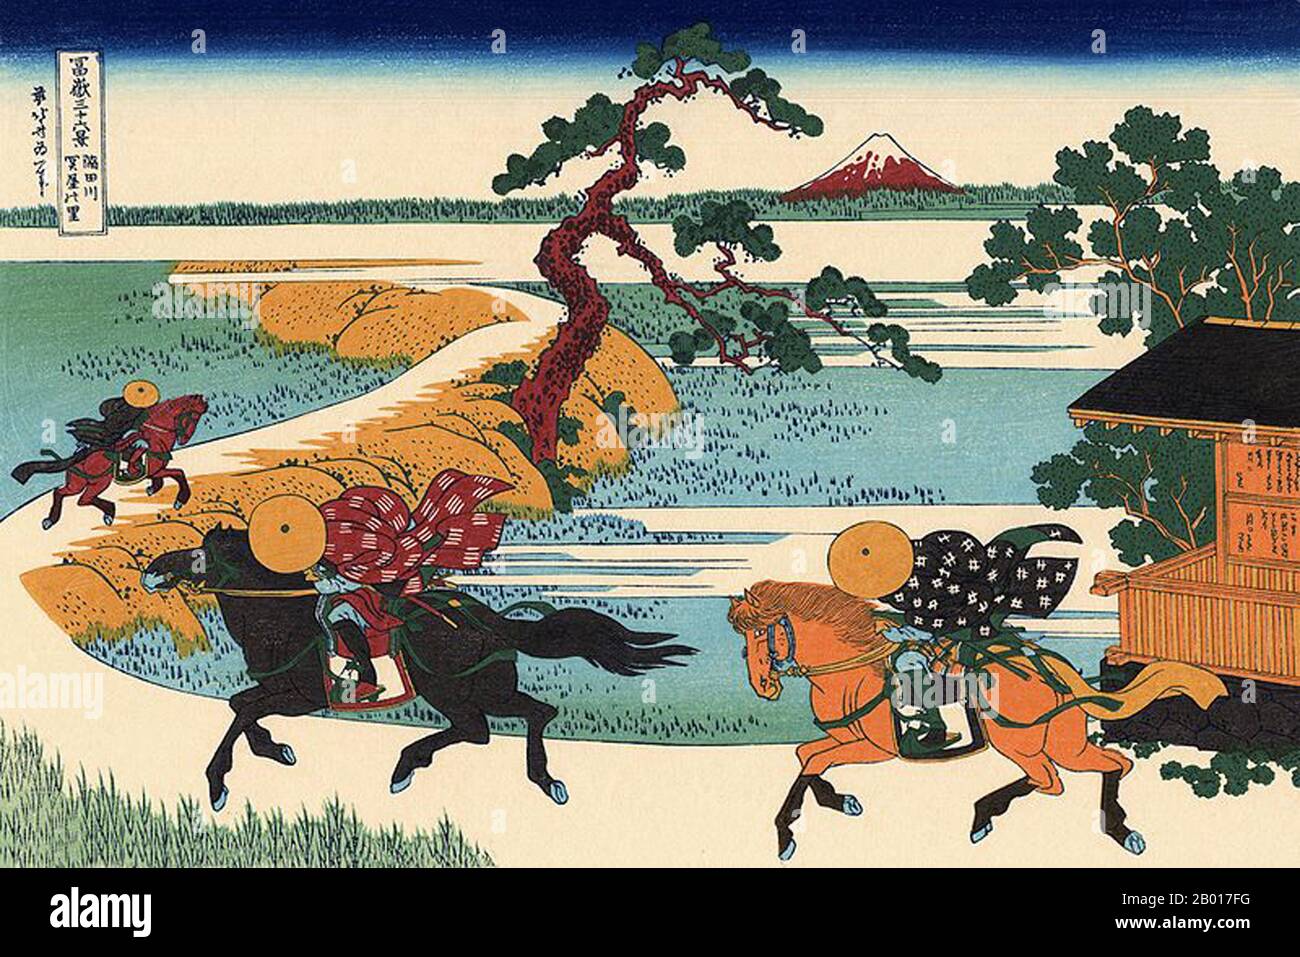 Japan: ‘Sekiya Village on the Sumida River’. Ukiyo-e Holzschnitt aus der Serie ‘Thirty-Six views of Mount Fuji’ von Katsushika Hokusai (31. Oktober 1760 - 10. Mai 1849), 1830. ‘Thirty-Six Views of Mount Fuji’ ist eine Serie von Holzschnitten der japanischen Künstlerin Katsushika Hokusai, die „Sukiyo-e“ ‘. Die Serie zeigt den Fuji in unterschiedlichen Jahreszeiten und Wetterbedingungen an verschiedenen Orten und Entfernungen. Es besteht tatsächlich aus 46 Drucken, die zwischen 1826 und 1833 entstanden sind. Die ersten 36 wurden in die ursprüngliche Publikation aufgenommen und aufgrund ihrer Popularität kamen 10 weitere hinzu. Stockfoto